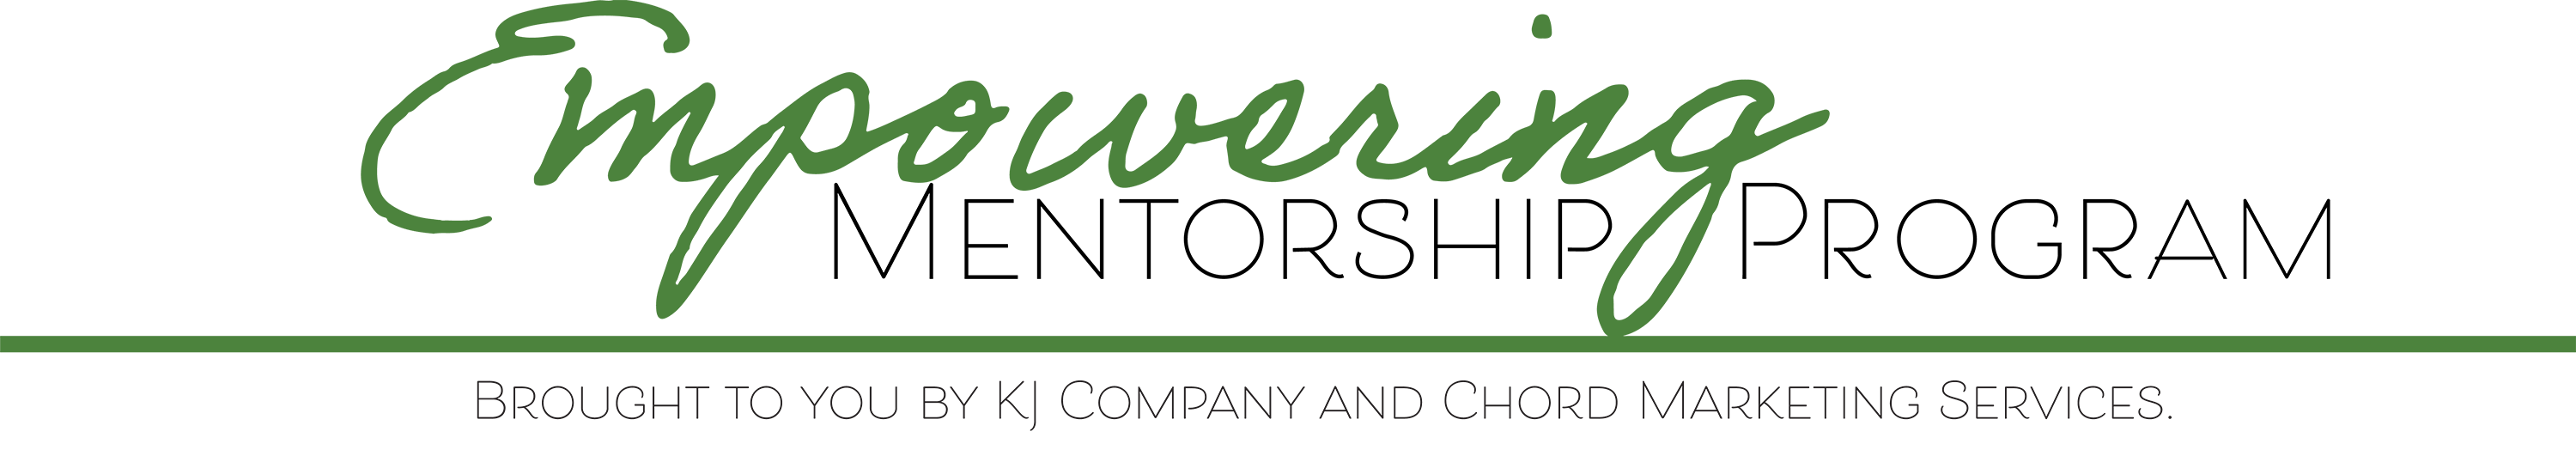 Empowering Mentorship Program Logo